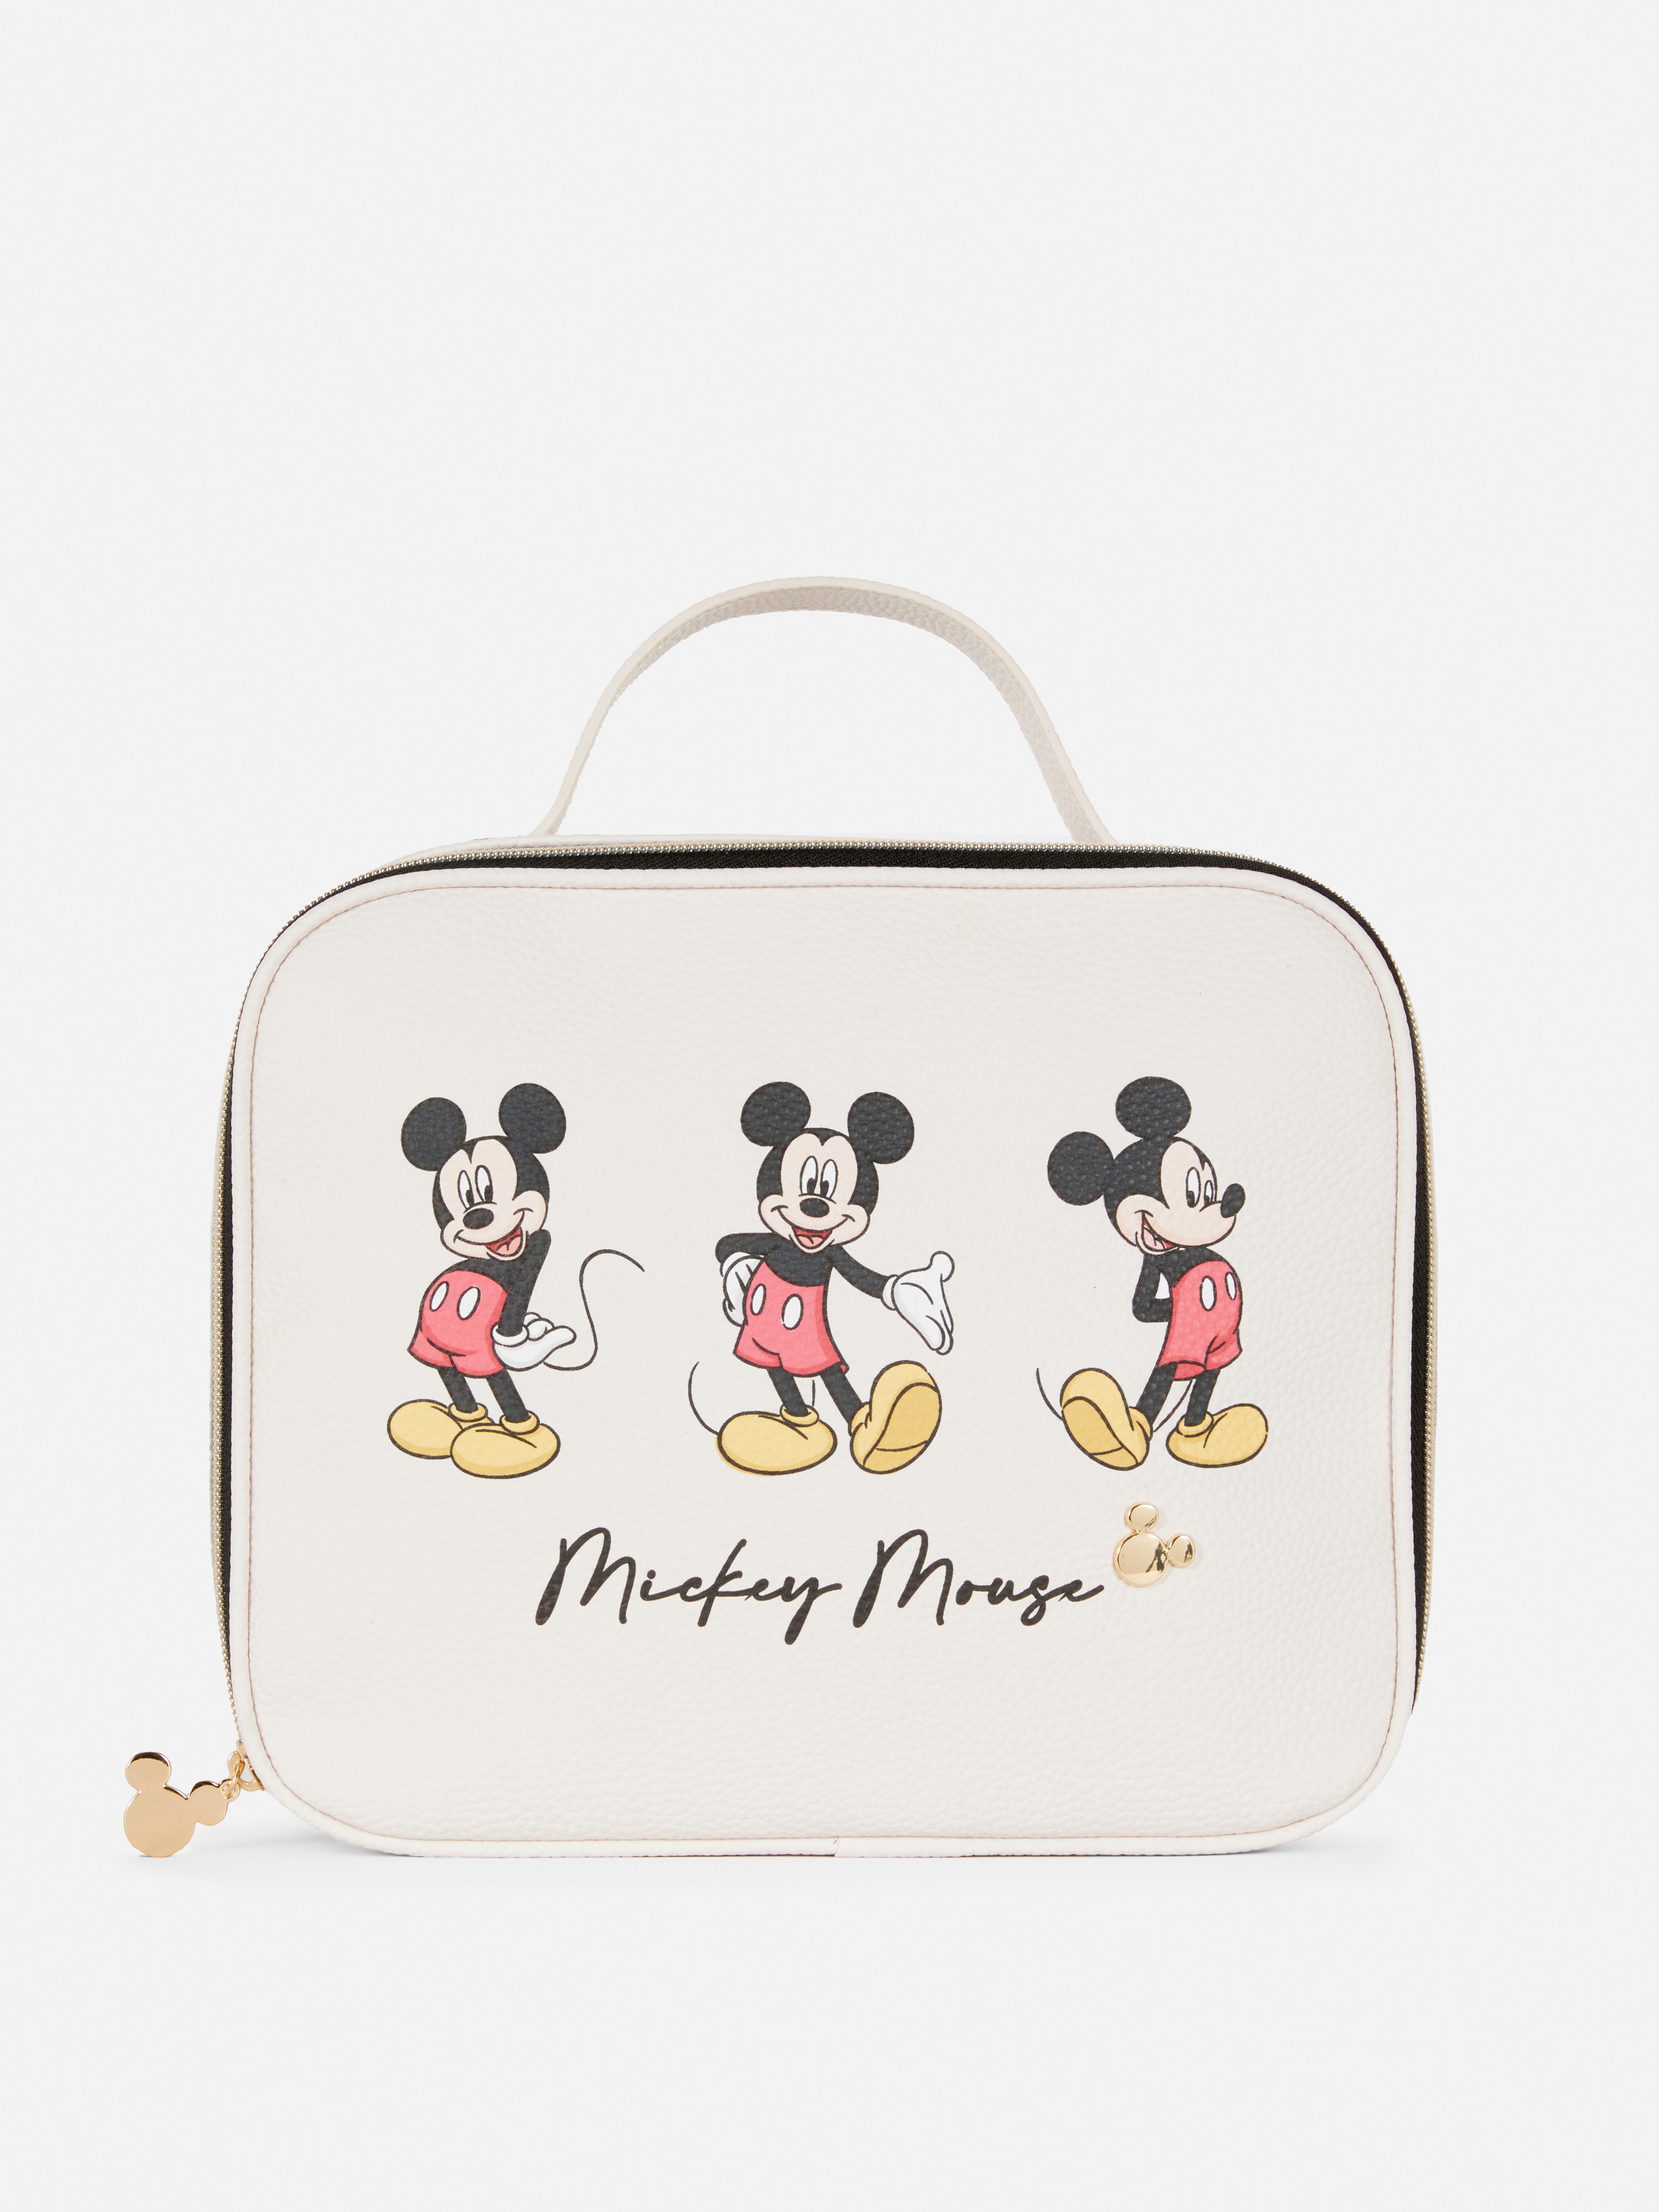 Disney's Mickey Mouse Makeup Bag